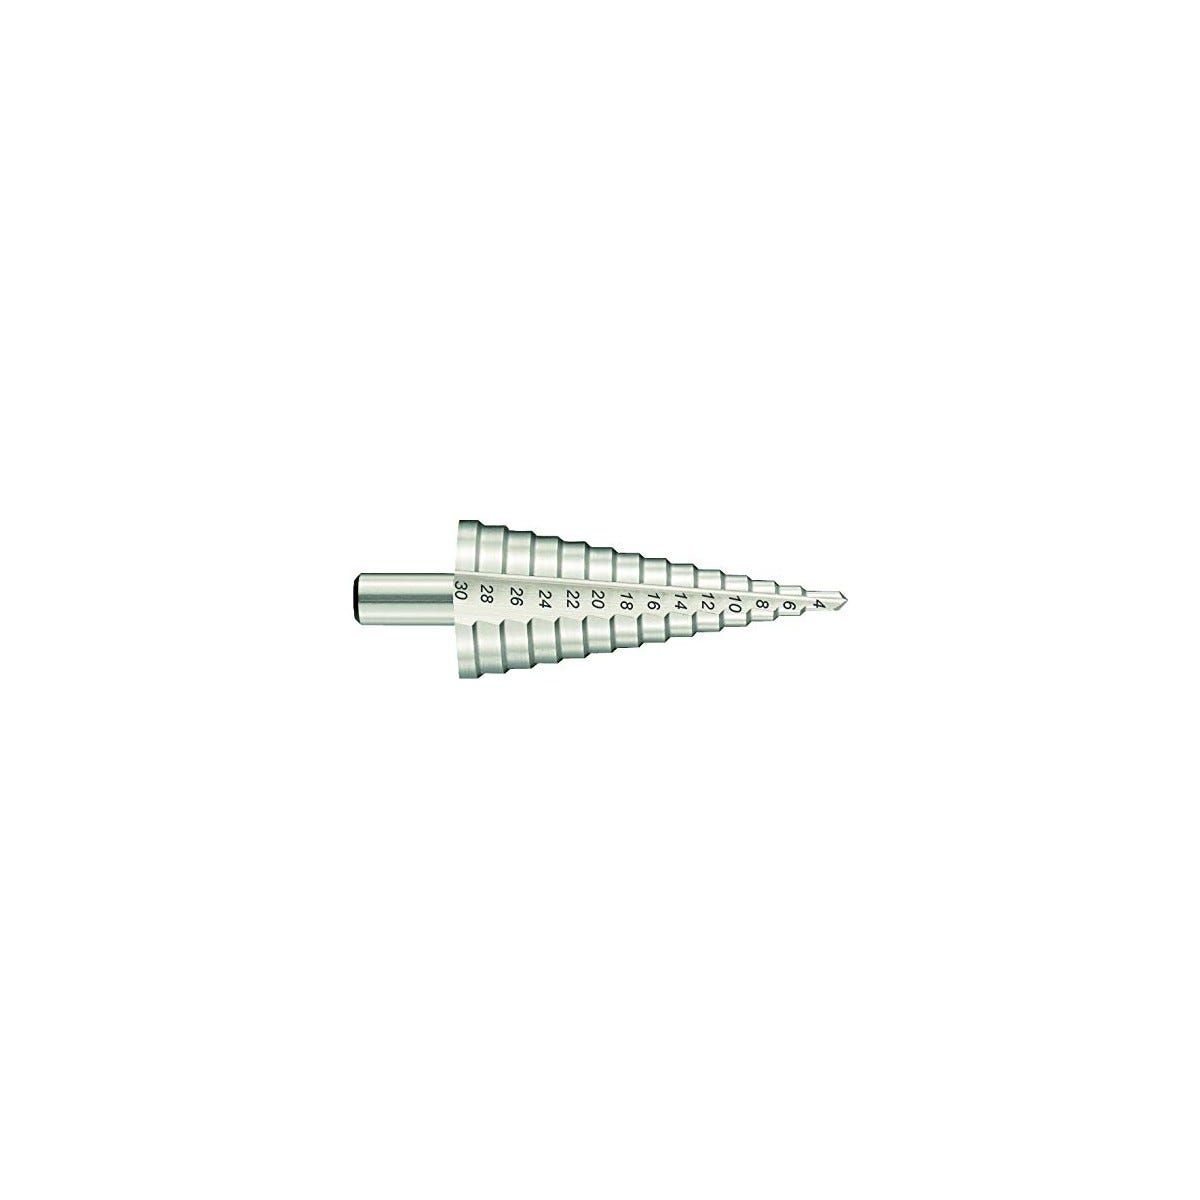 Foret conique / Cône Fraise à étages (4-32mm)